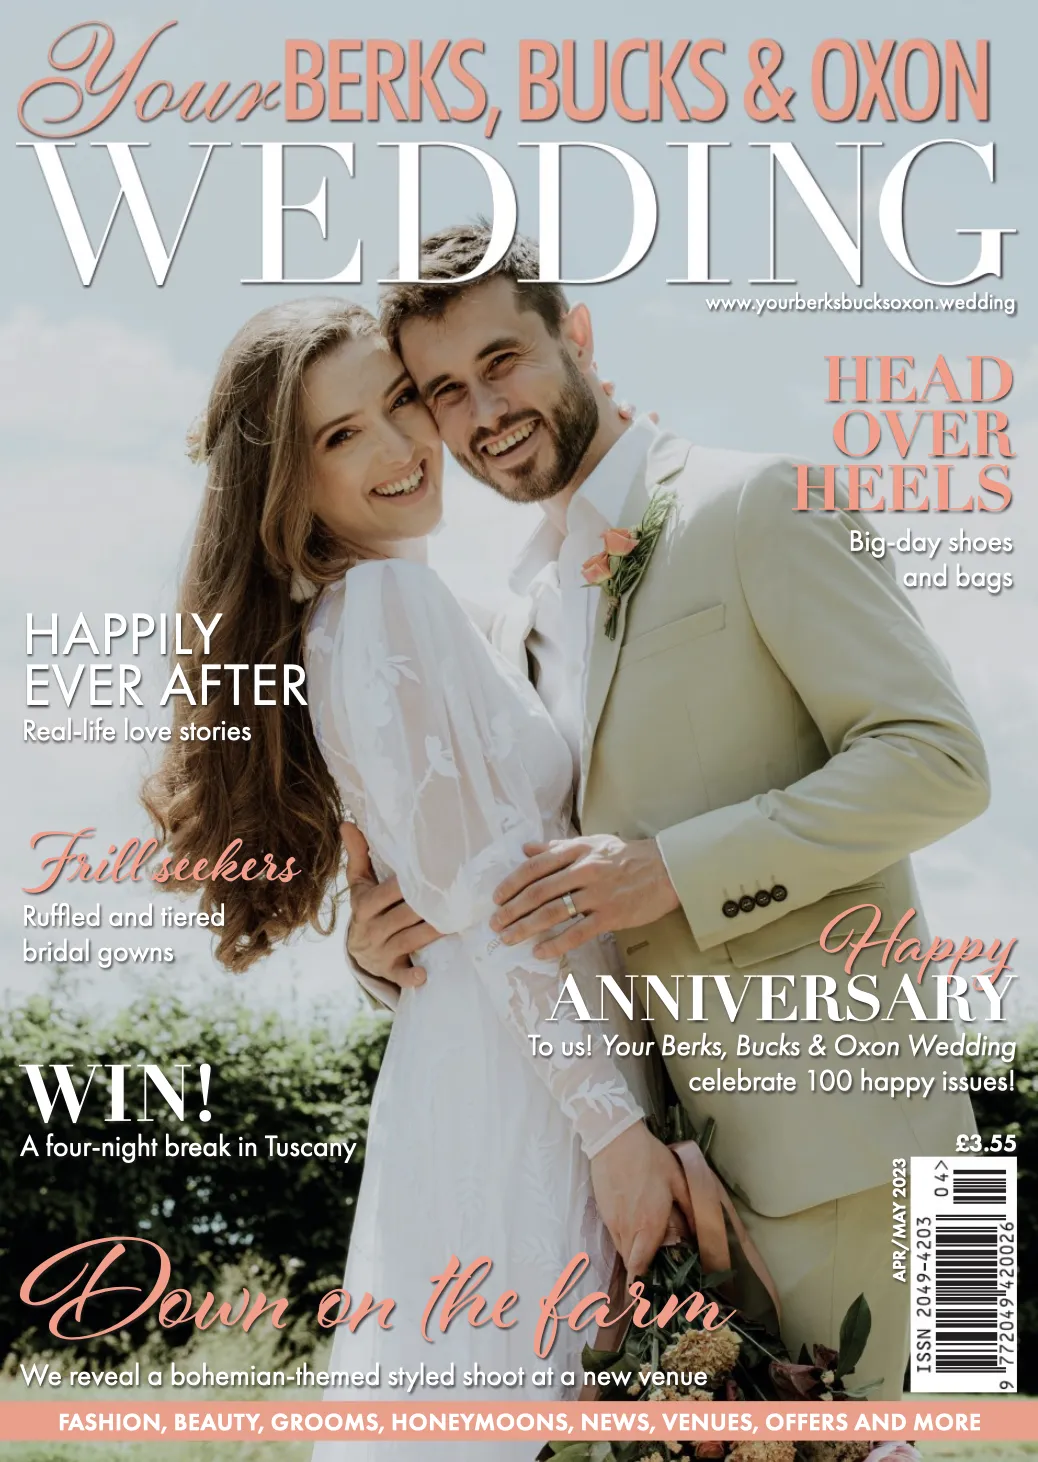 Wedding magazine styled shoot feature 